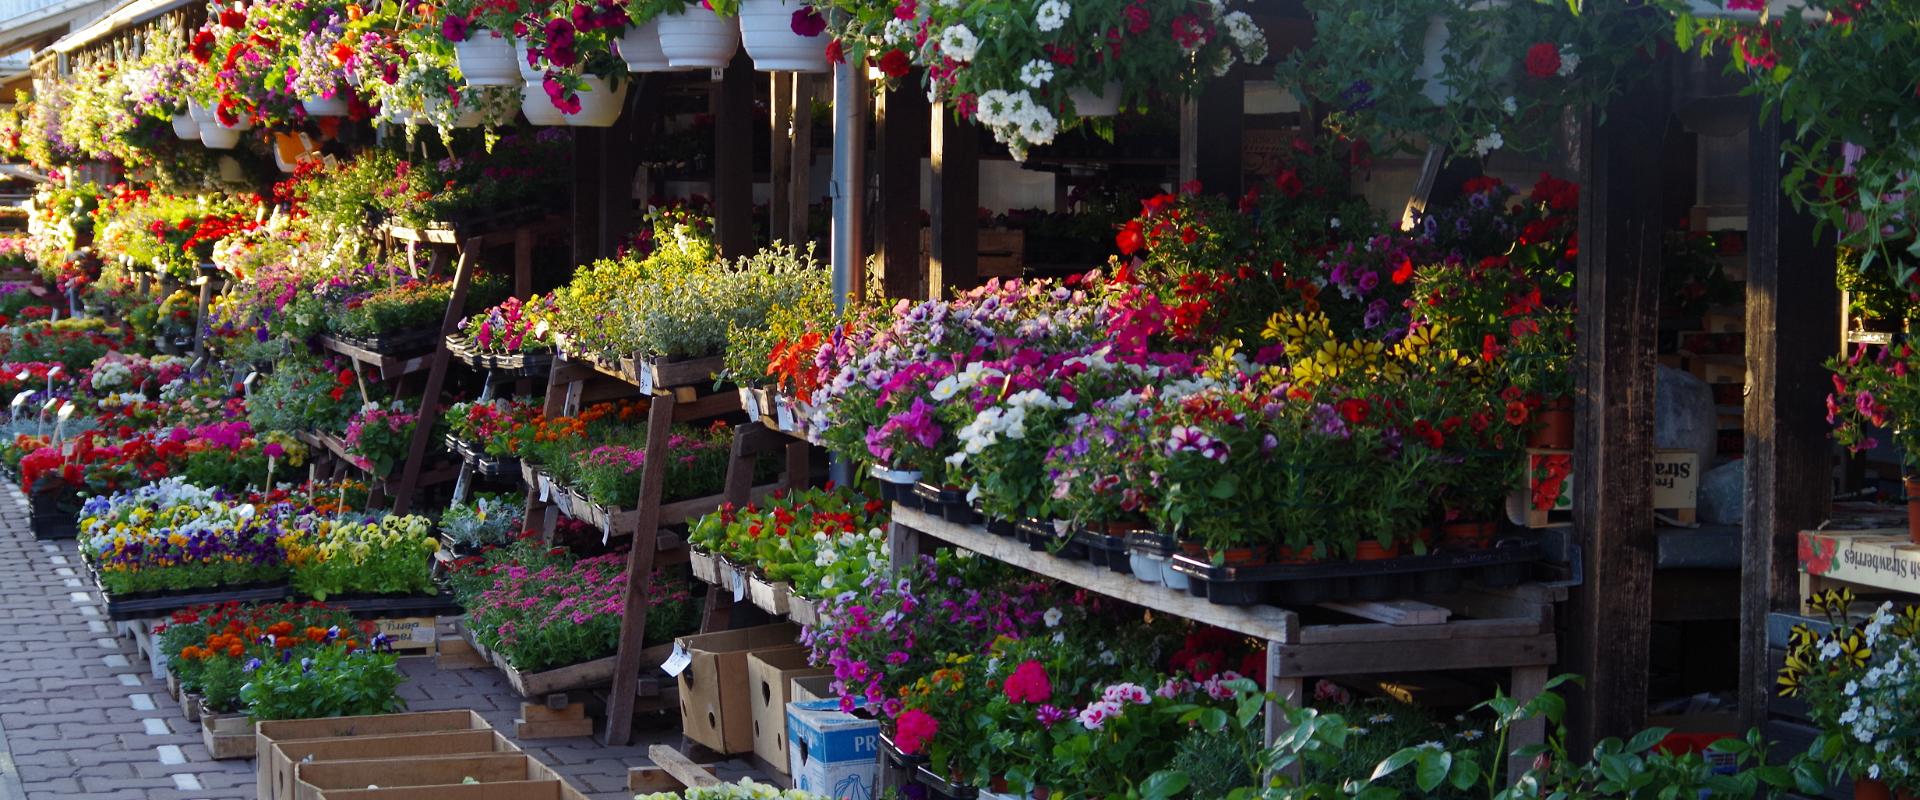 Freiluftmarkt in Tartu: ein Paradies für Gartenbesitzer, eine bunte Blumenauswahl